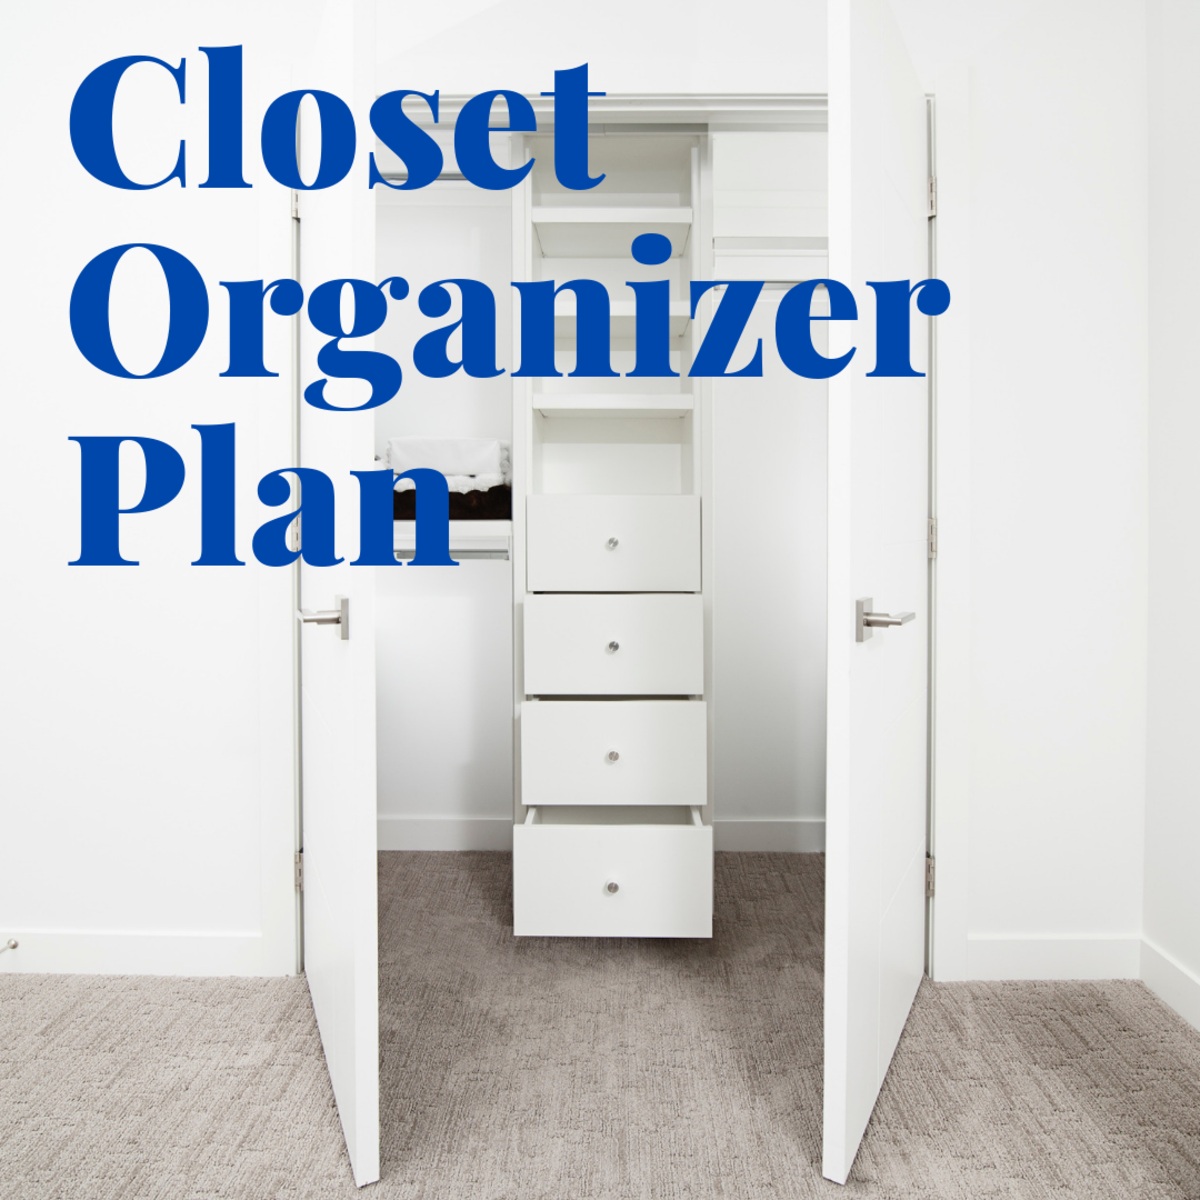 DIY Closet Organizer Plans: How to Customize Your Closet